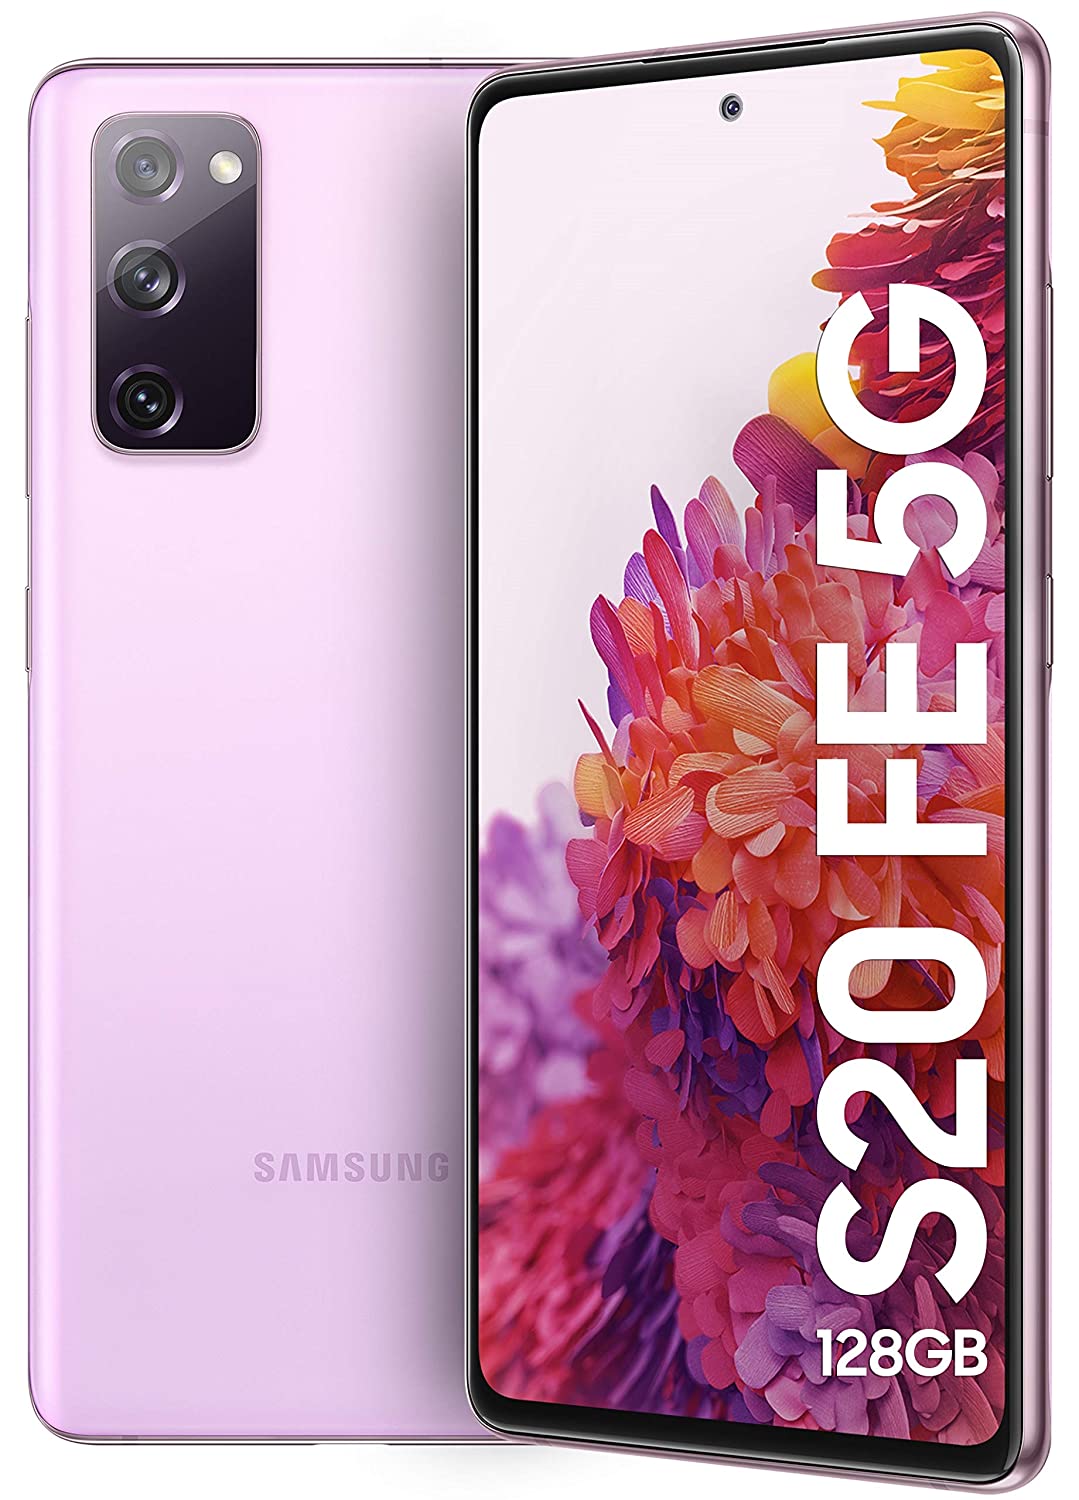 Samsung Galaxy S20 FE 5G: 18 जून को इस फोन पर आने वाला है एक जबरदस्त ऑफर, जानिये पूरी डील